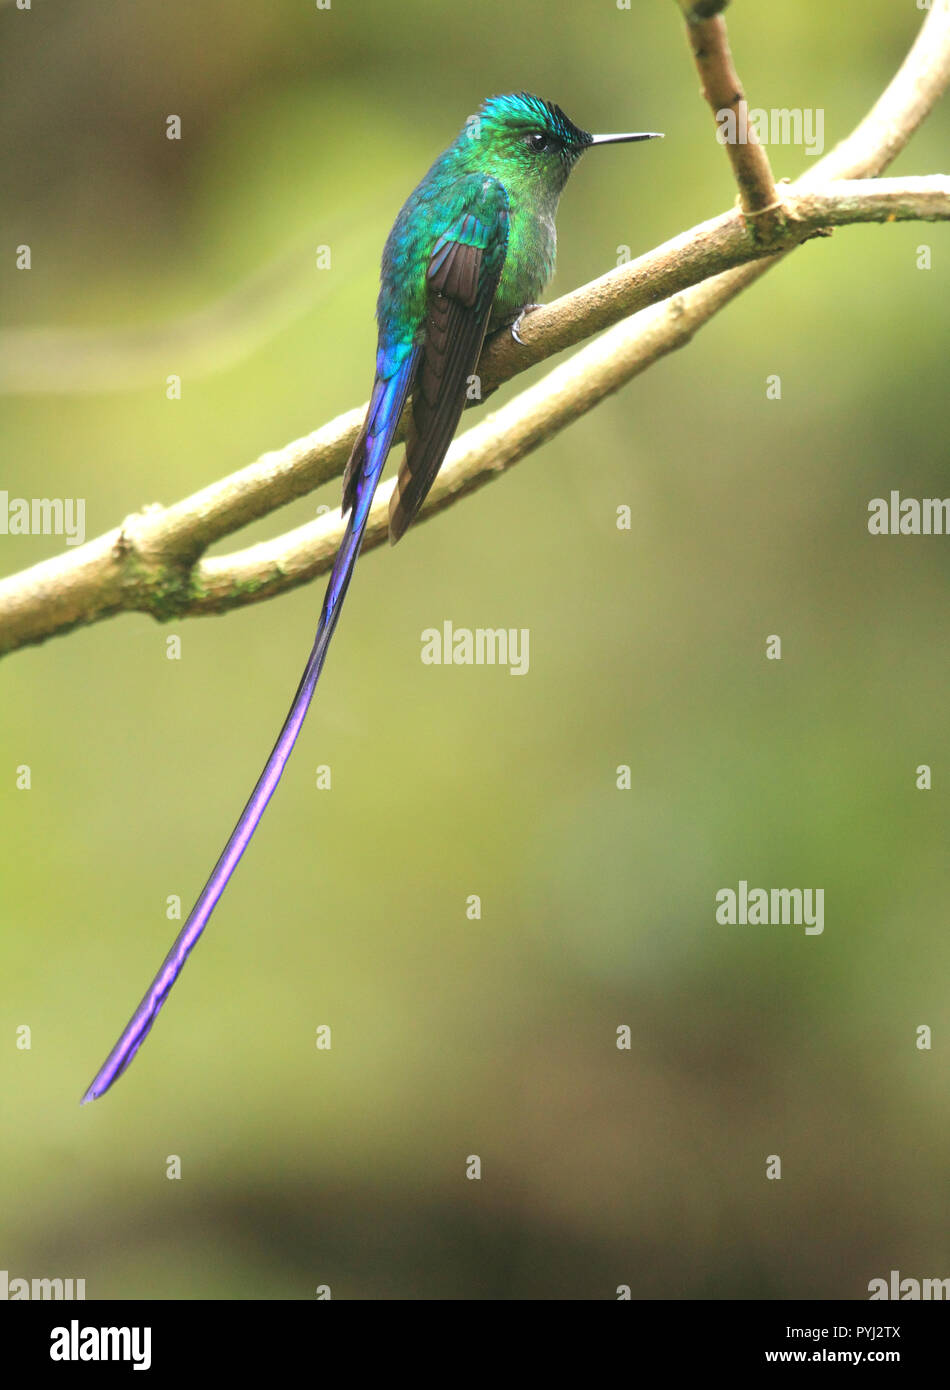 Wunderschöne Long-tail sylph männlichen Kolibri in seinem natürlichen Lebensraum des tropischen Regenwaldes thront. Stockfoto